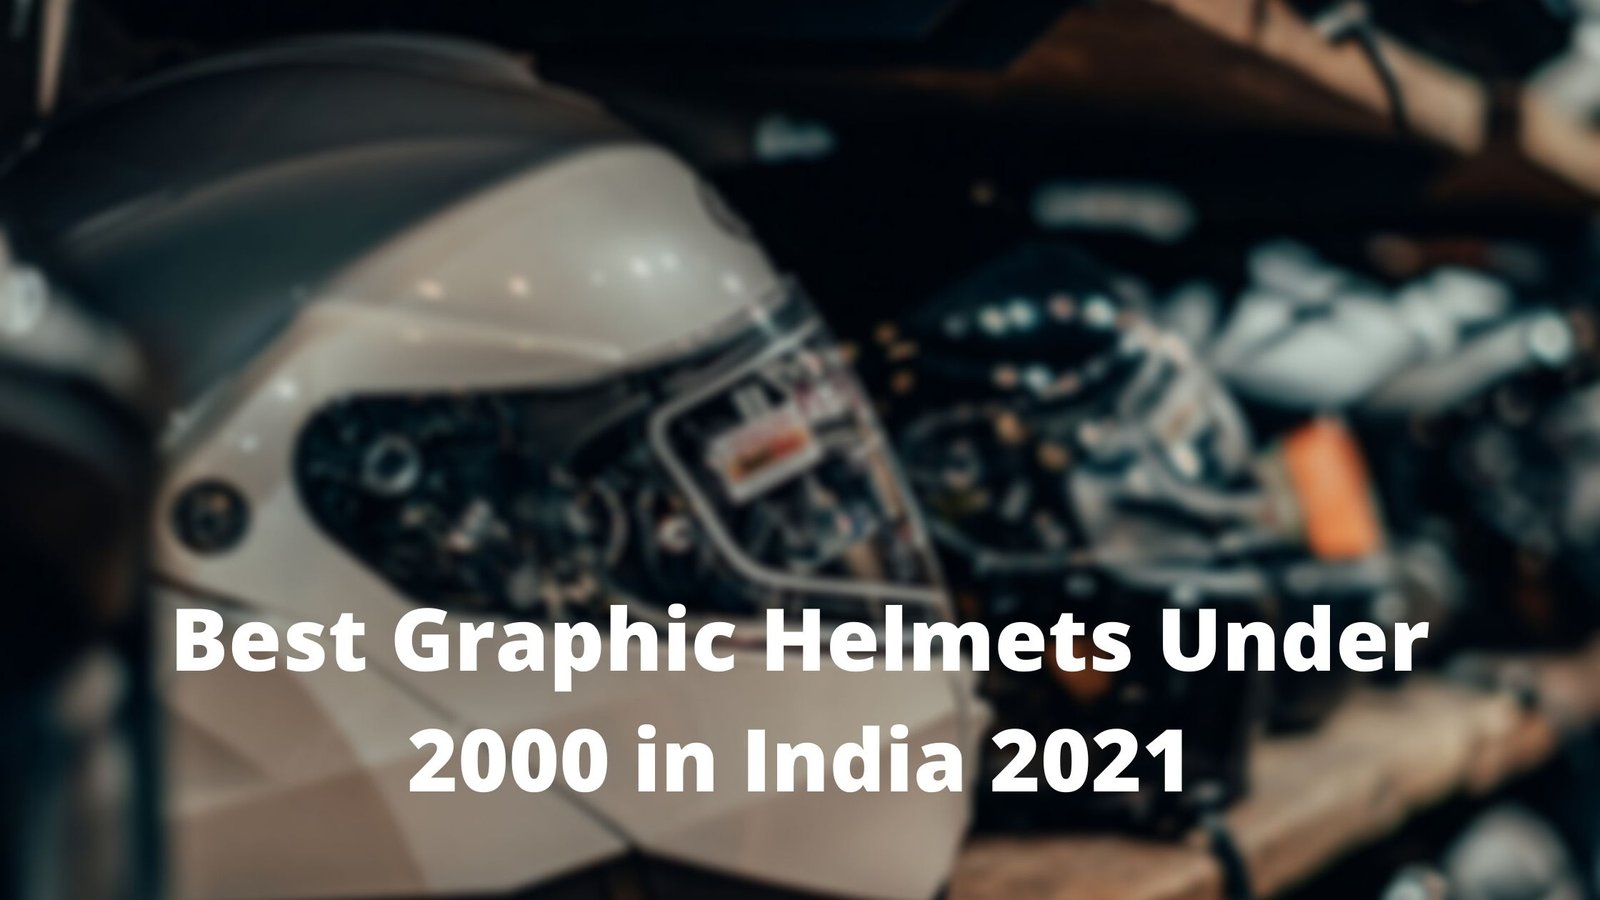 Top 10 Best Graphic Helmets Under 2000 in India 2021